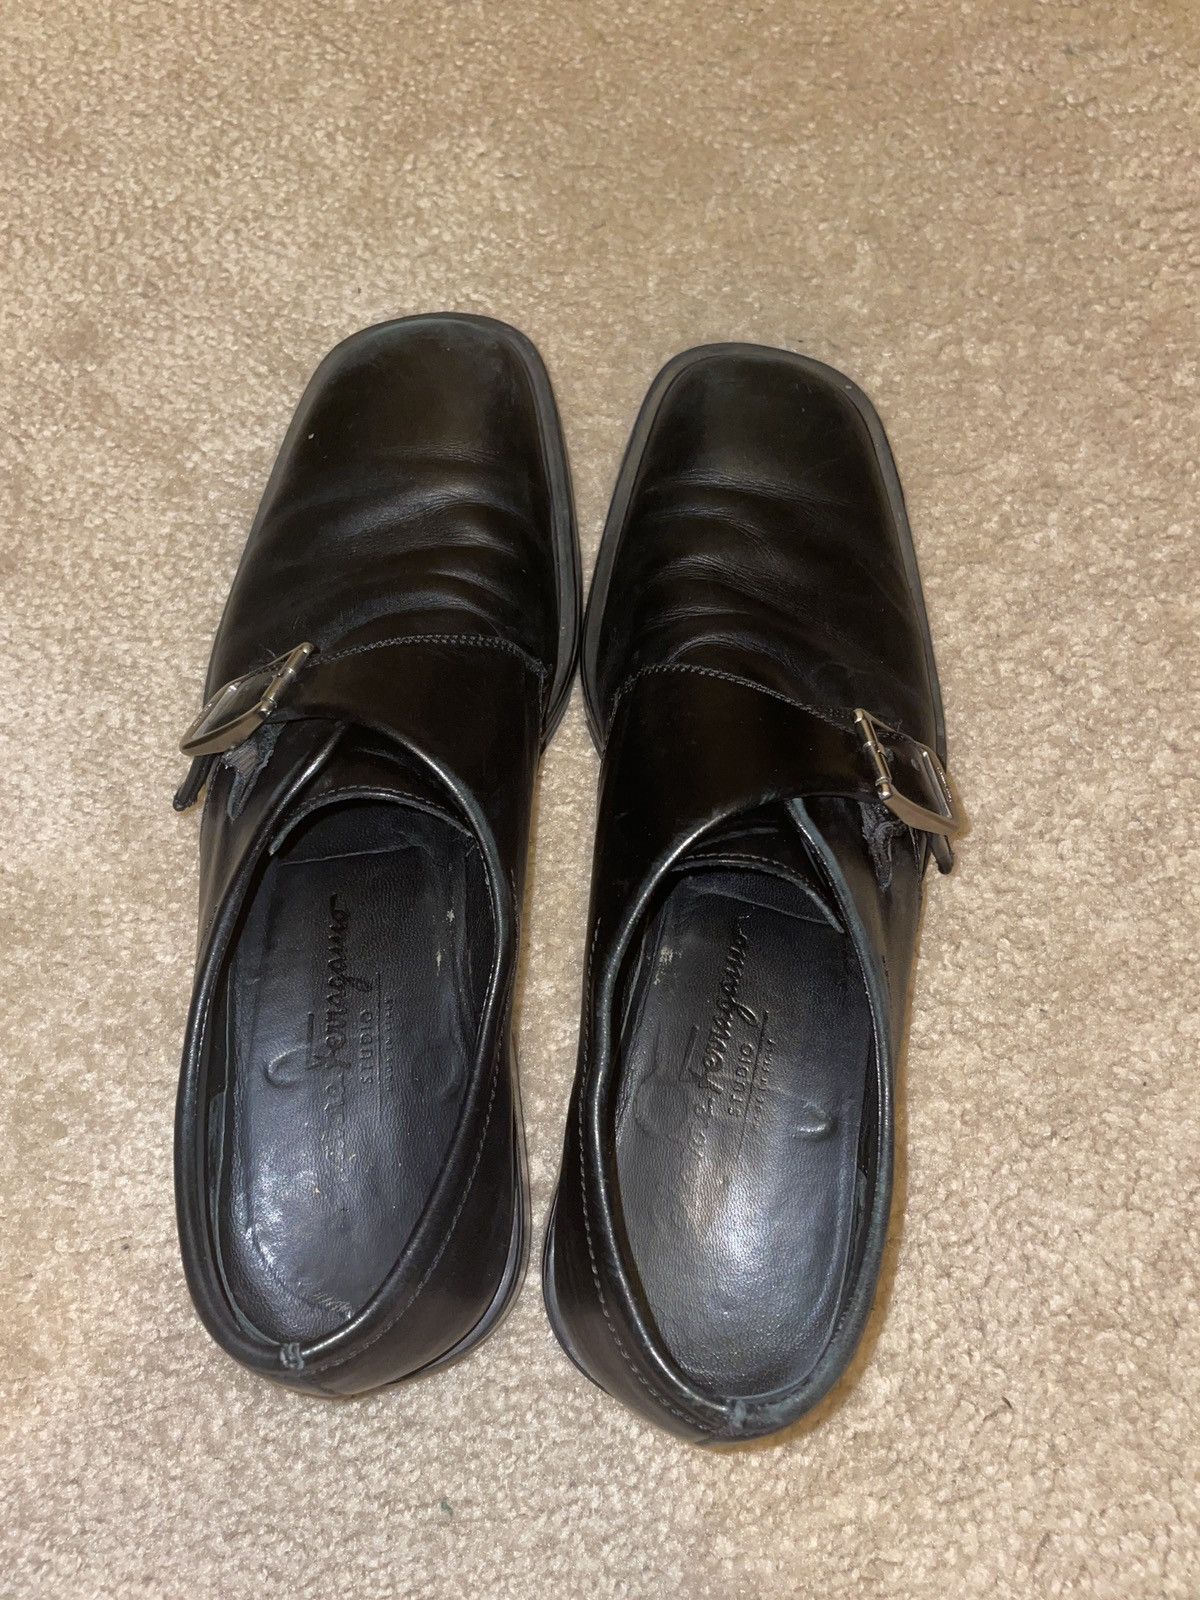 Vintage Vintage Ferragamo Loafers Size US 8.5 / EU 41-42 - 2 Preview